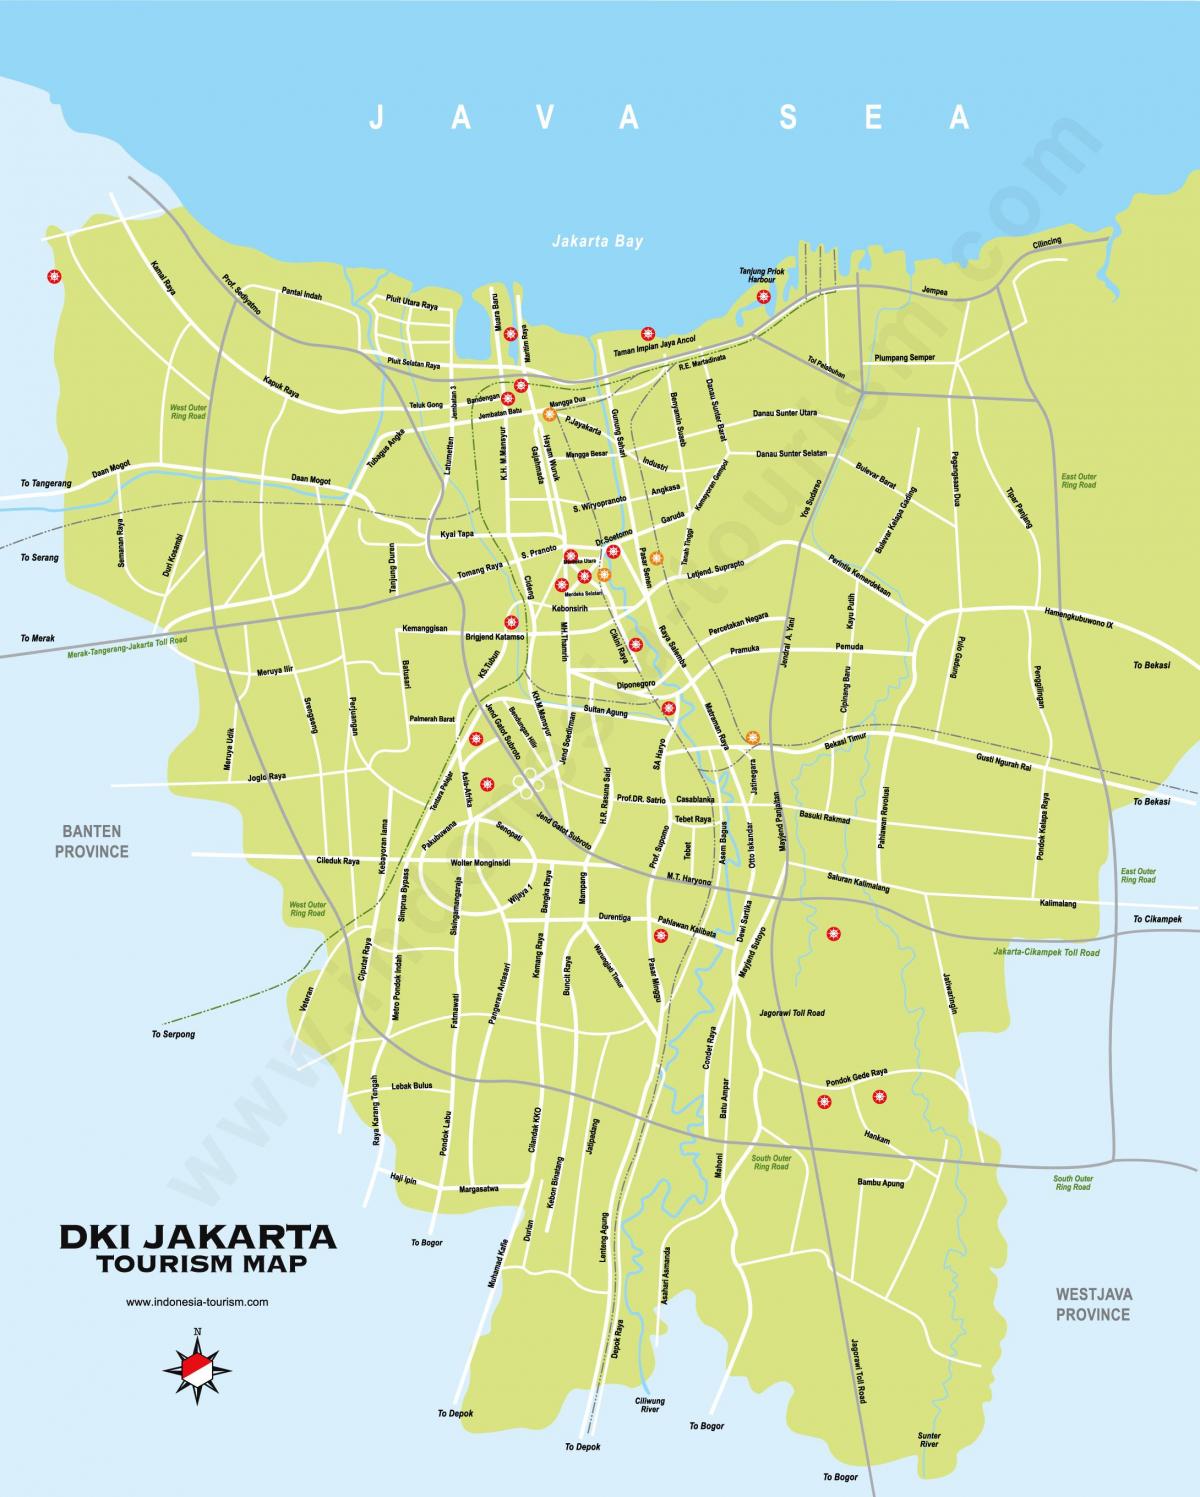 Mappa turistica di Jakarta